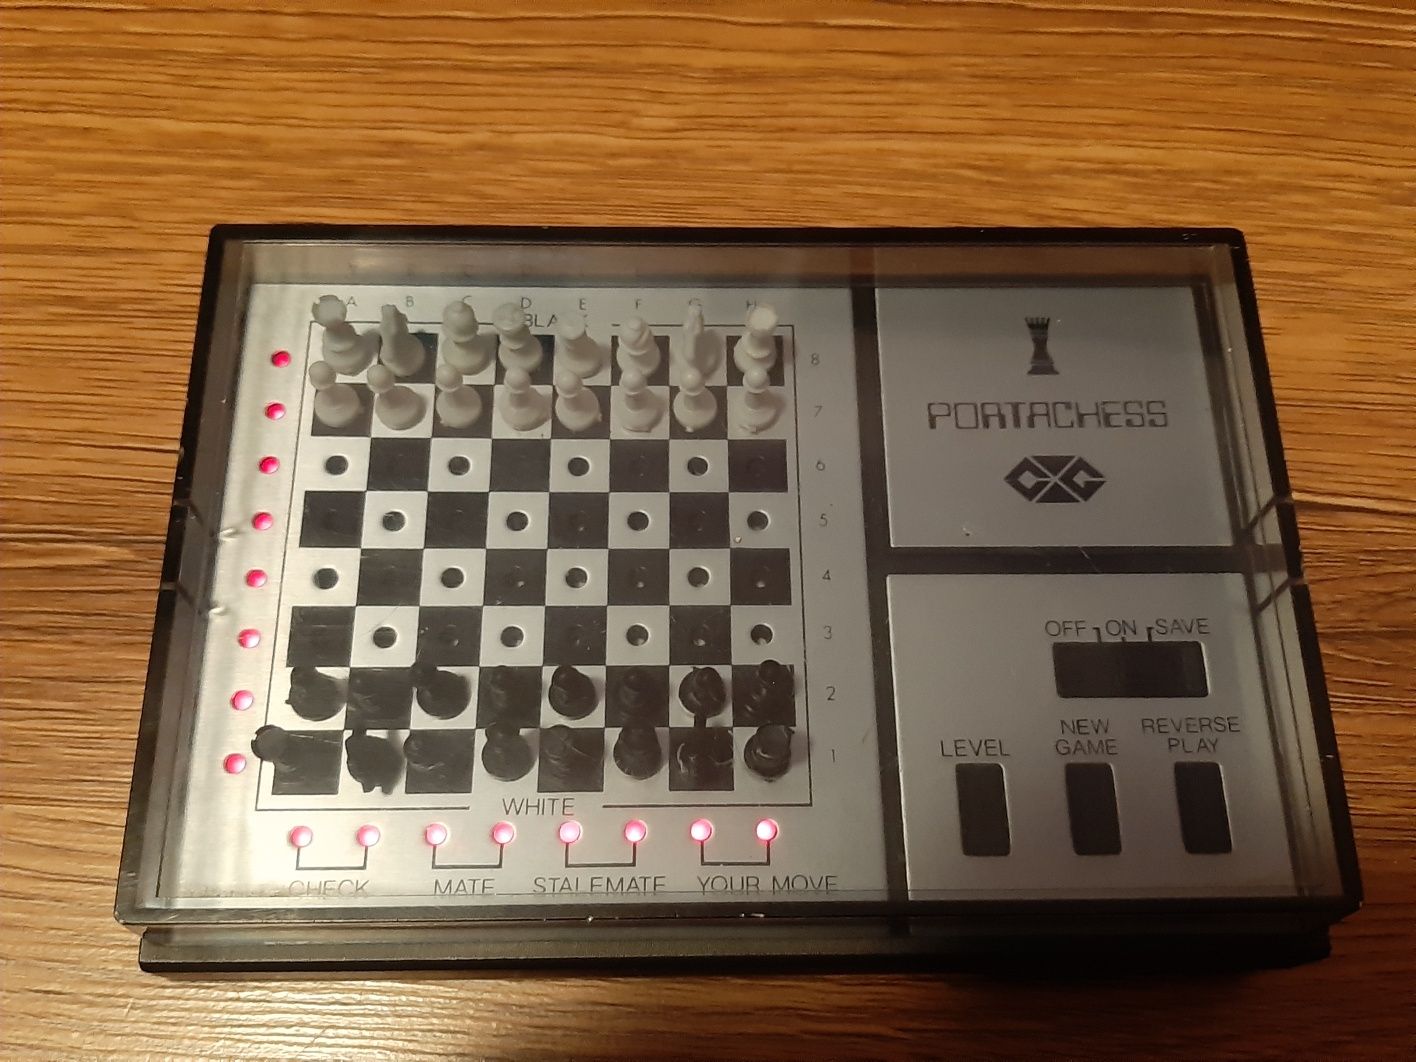 Șah electronic PortaChess